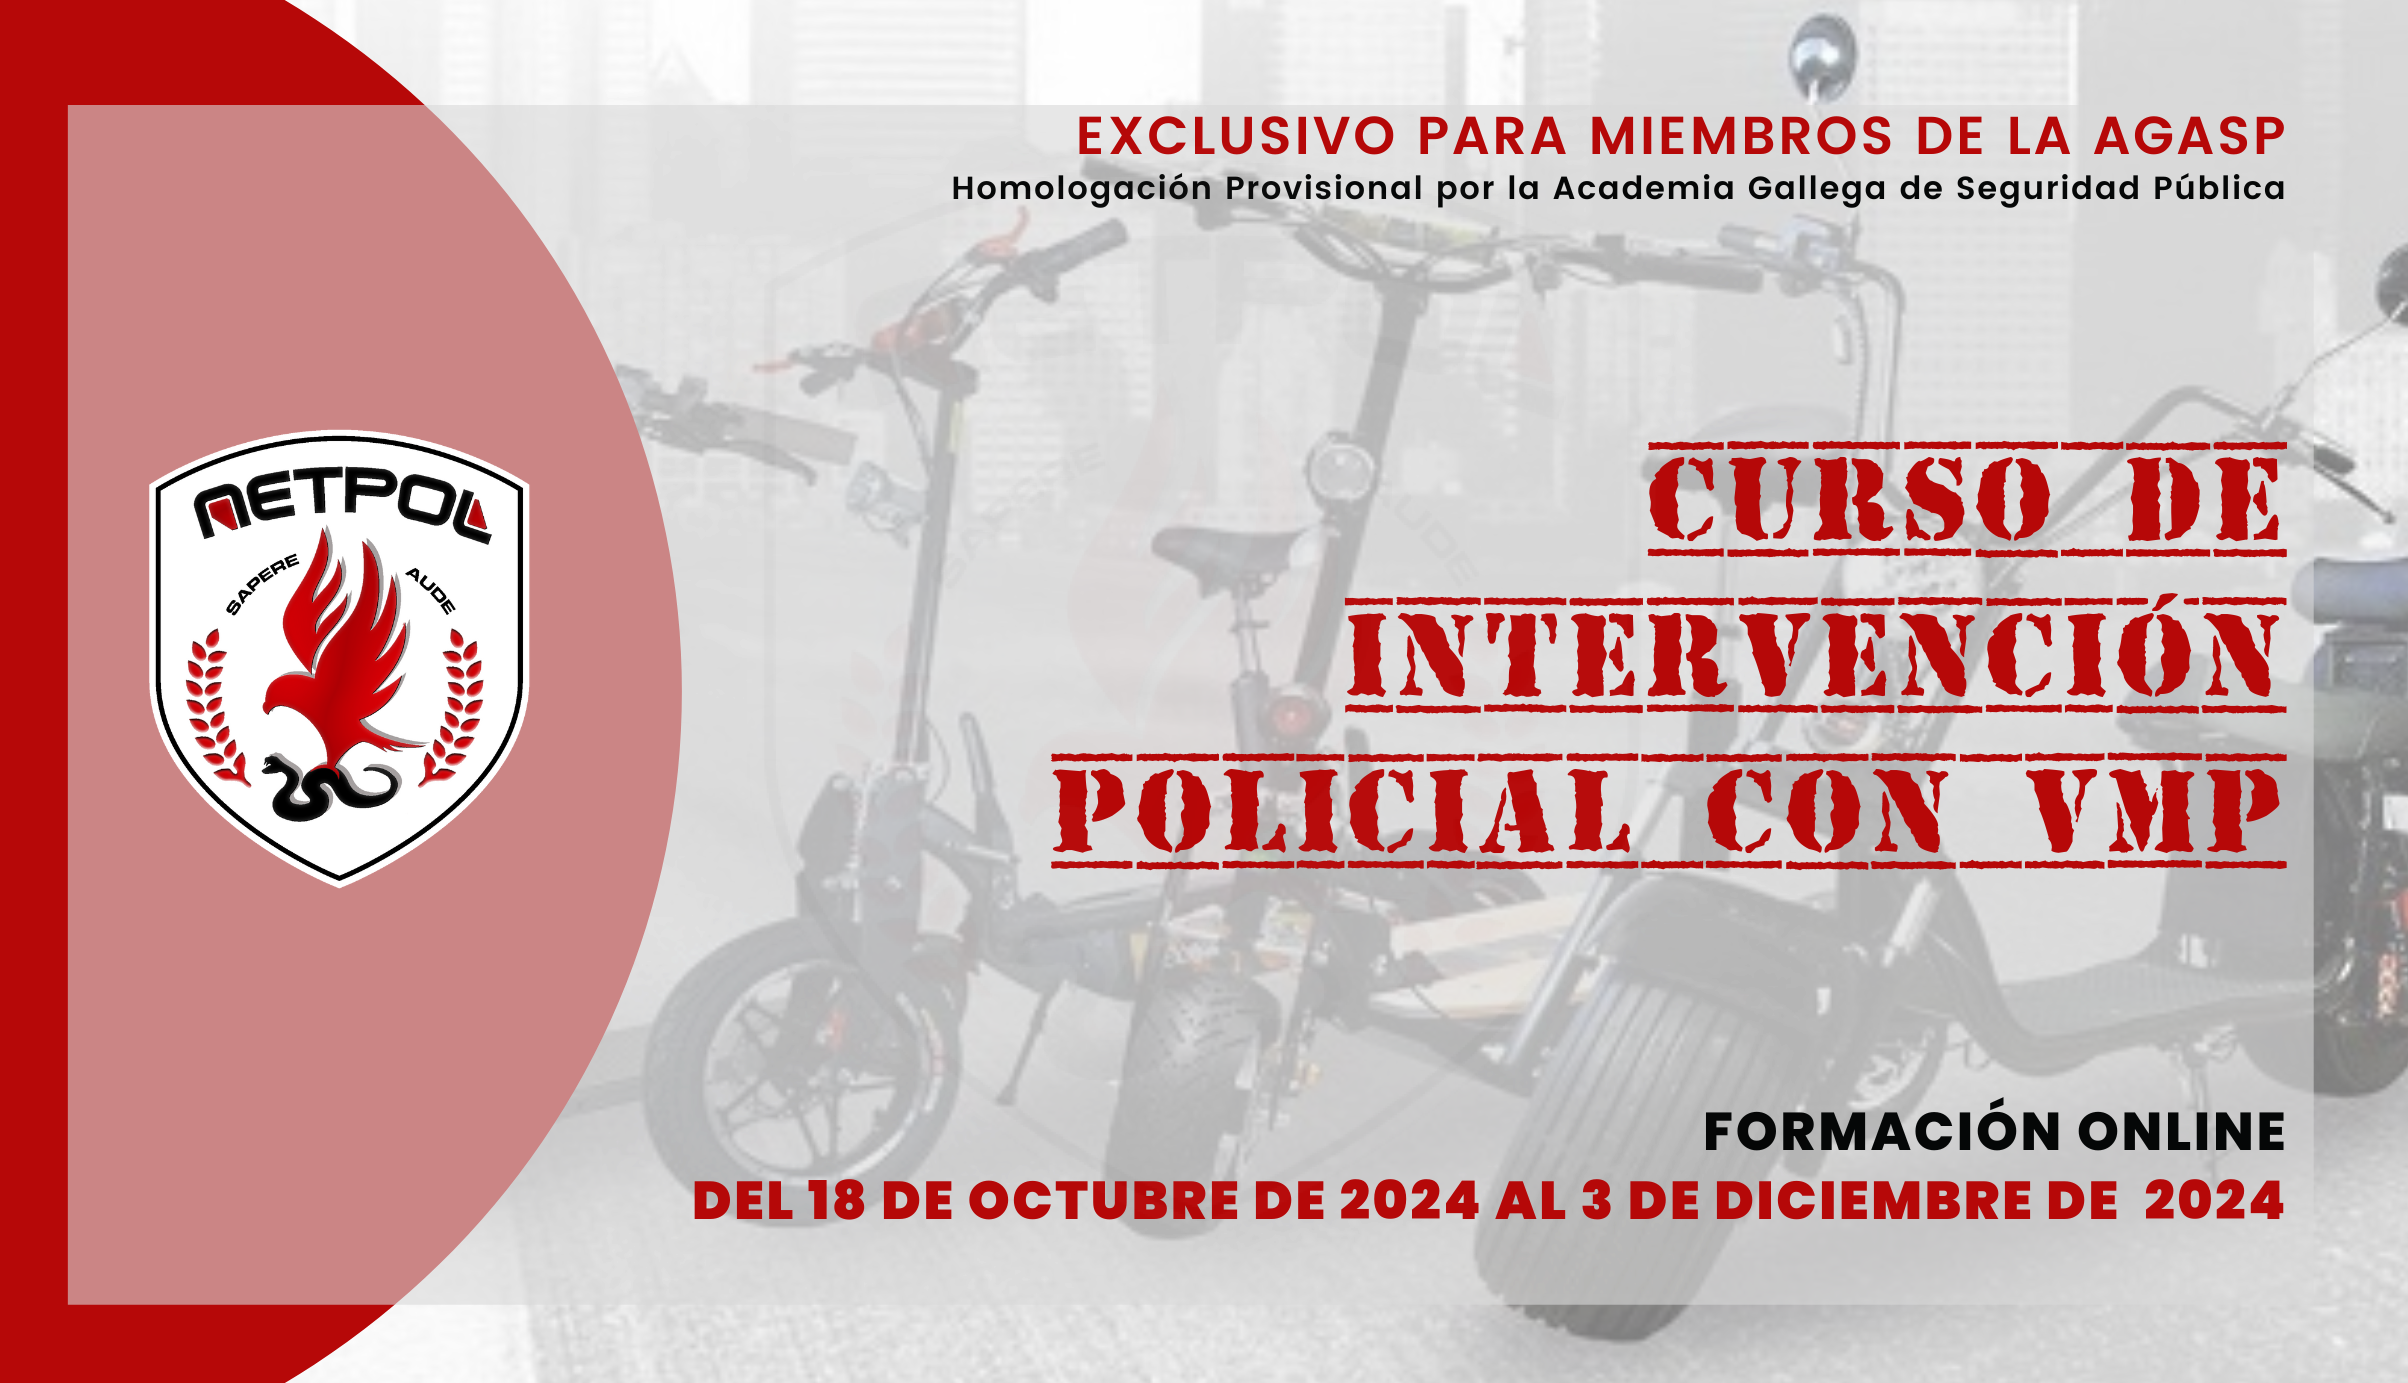 CURSO DE INTERVENCIÓN POLICIAL CON VMP.